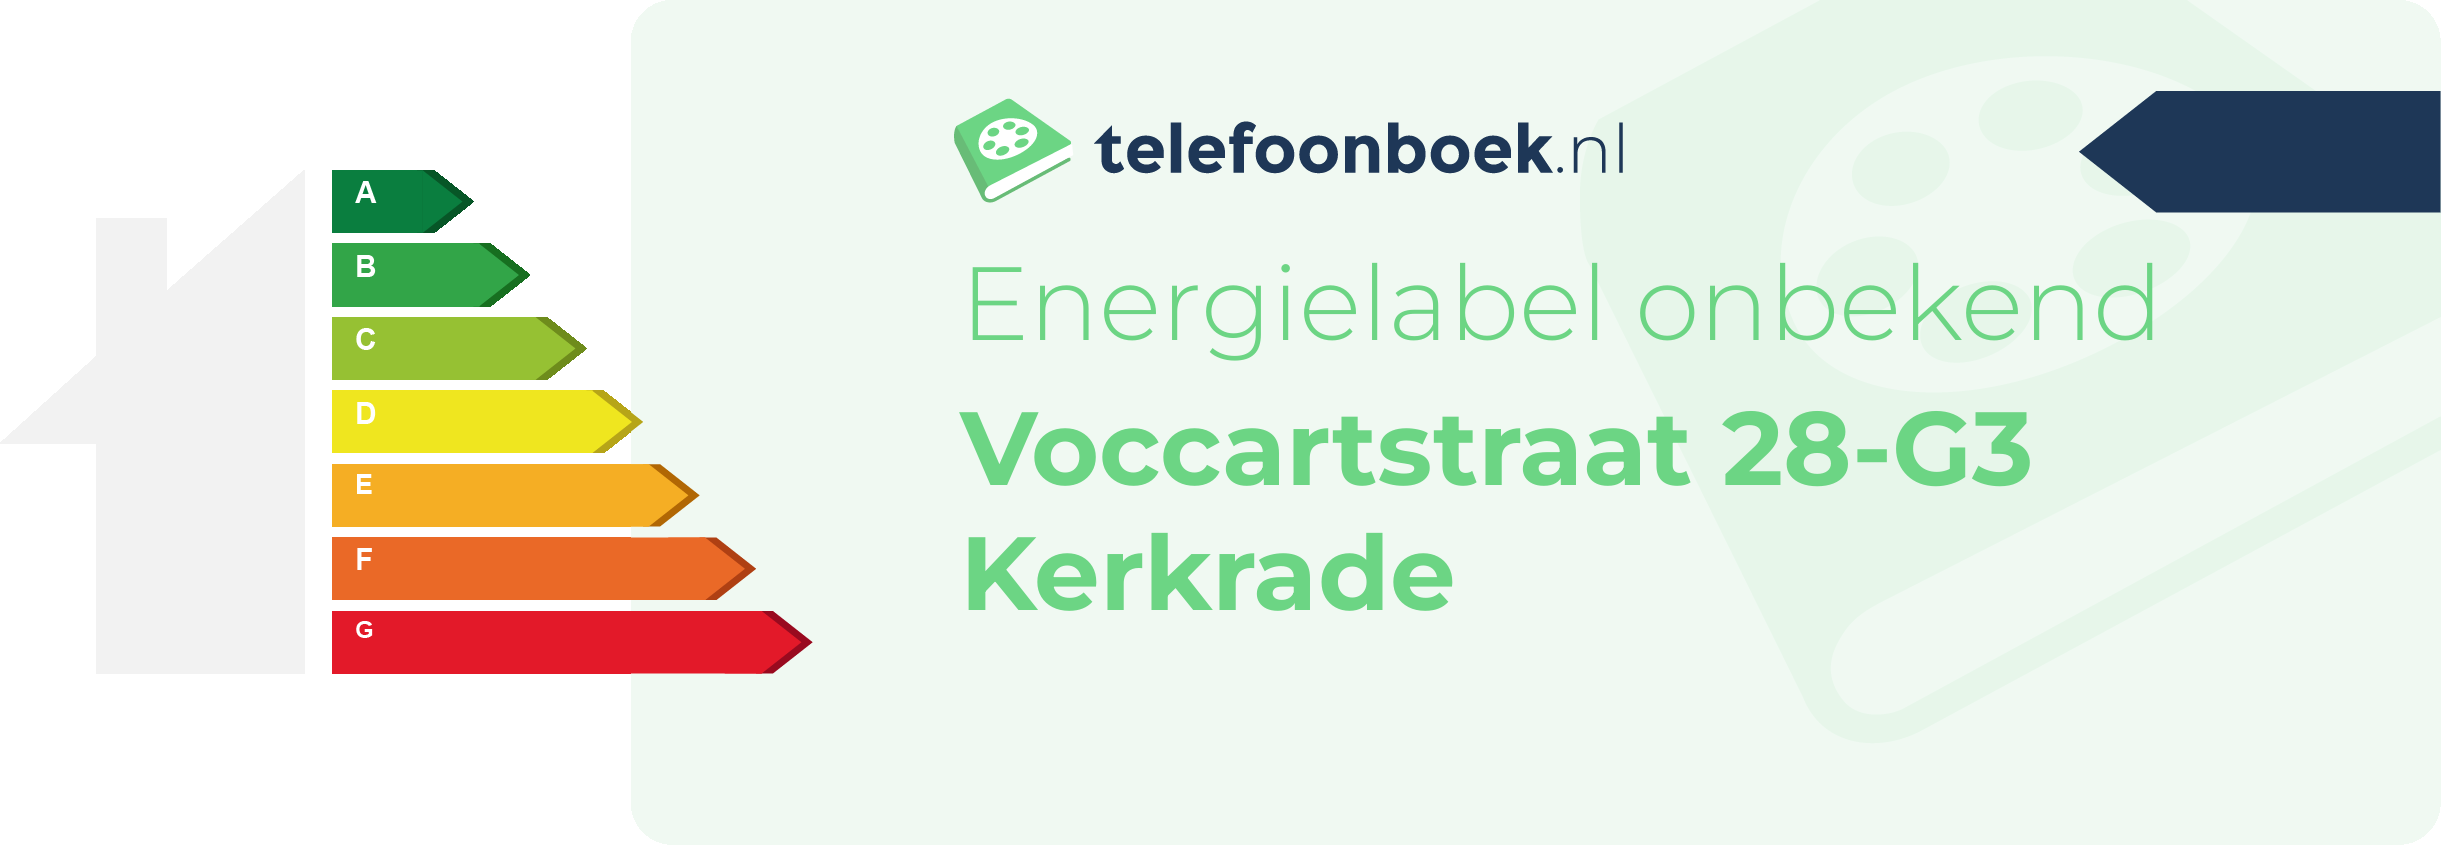 Energielabel Voccartstraat 28-G3 Kerkrade